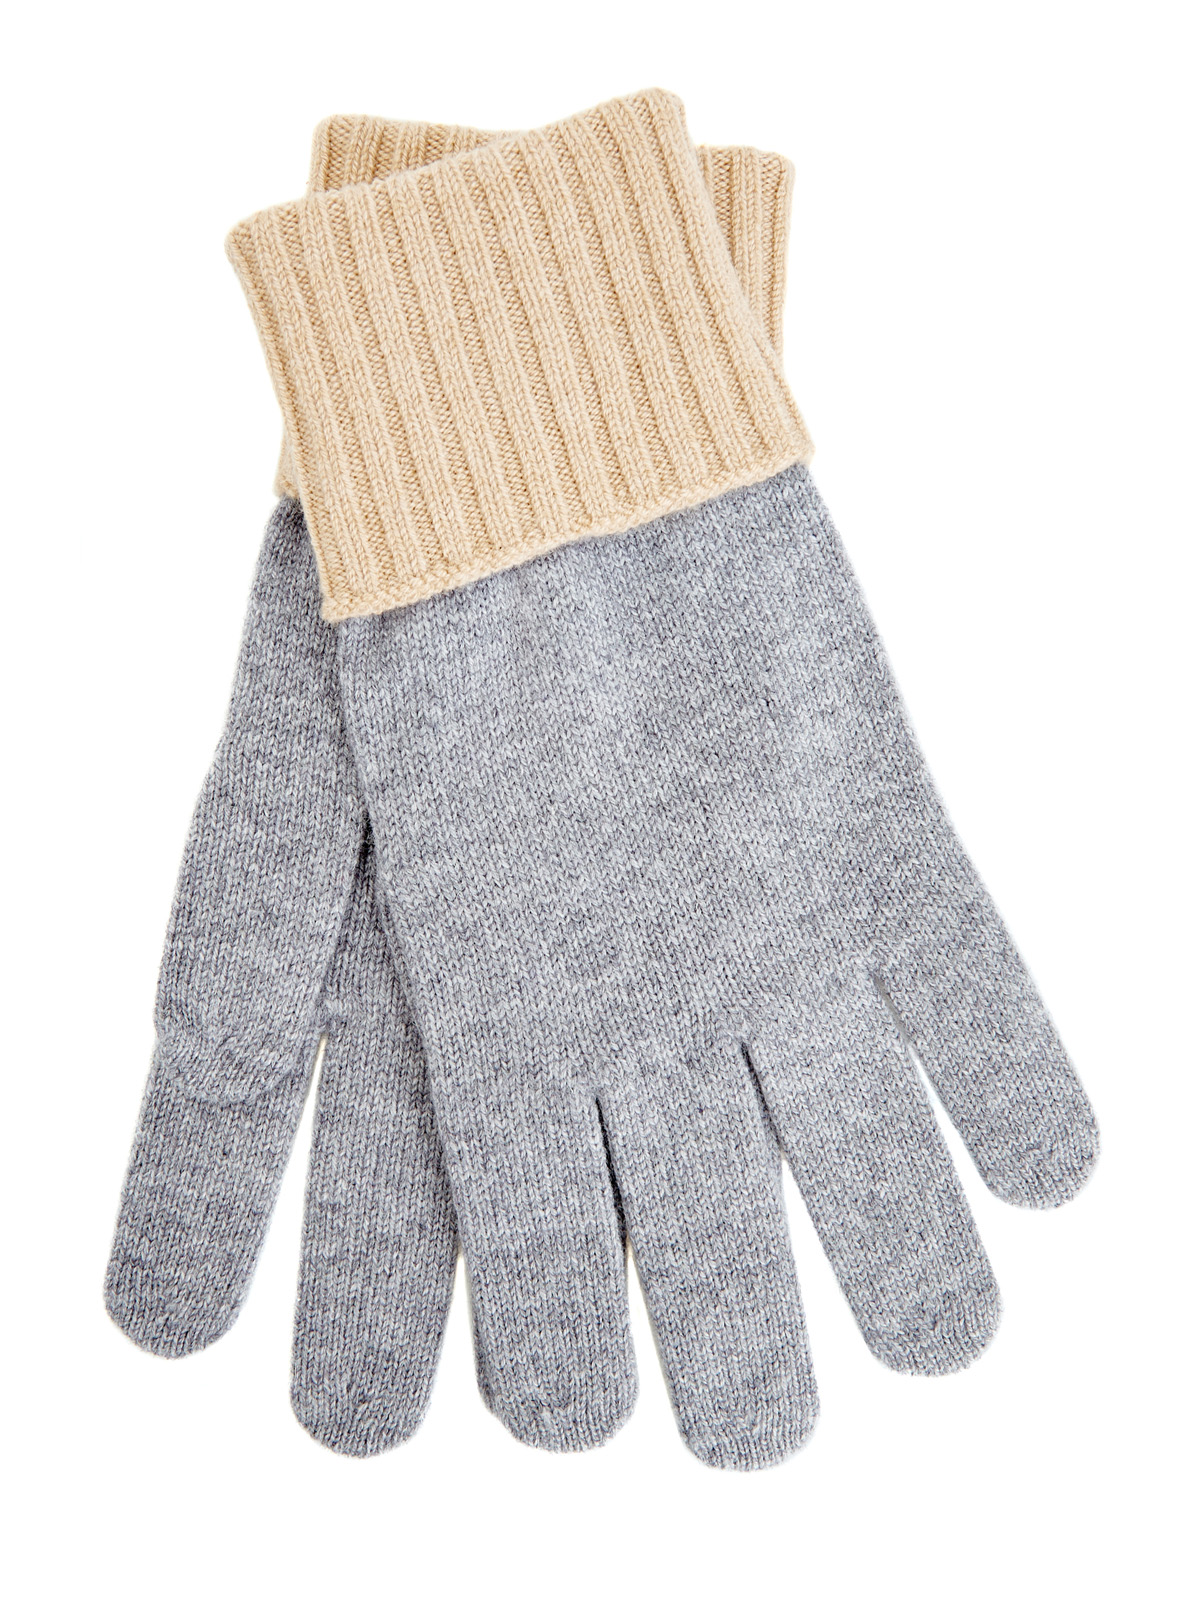 Двухцветные перчатки из мягкой кашемировой пряжи ELEVENTY, размер L;XL;2XL - фото 1